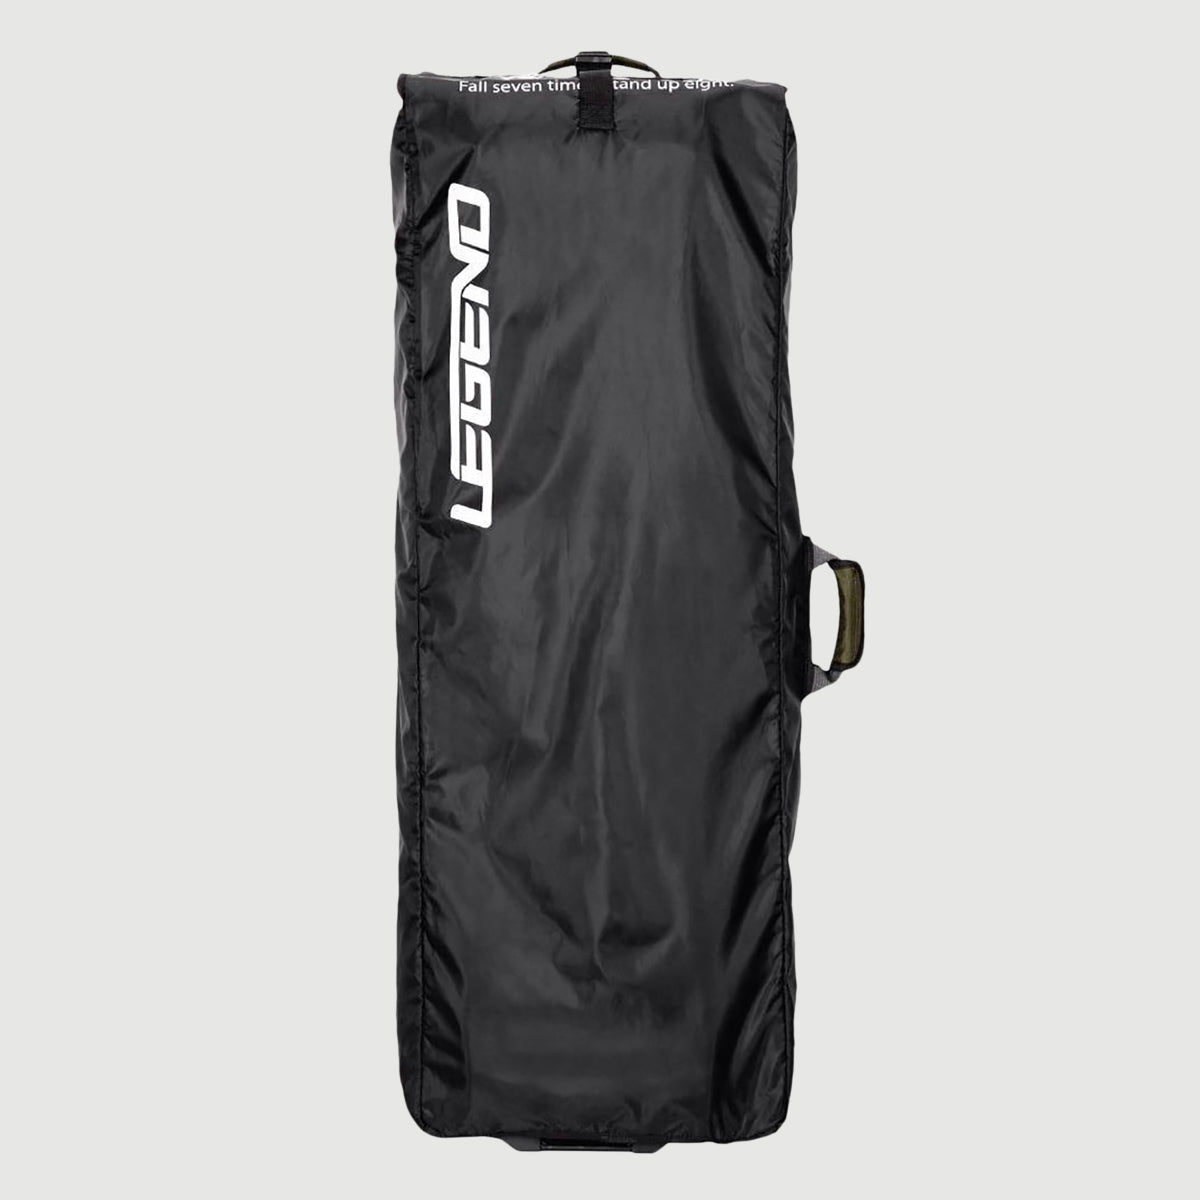  Everest Sling Bag, Black, One Size